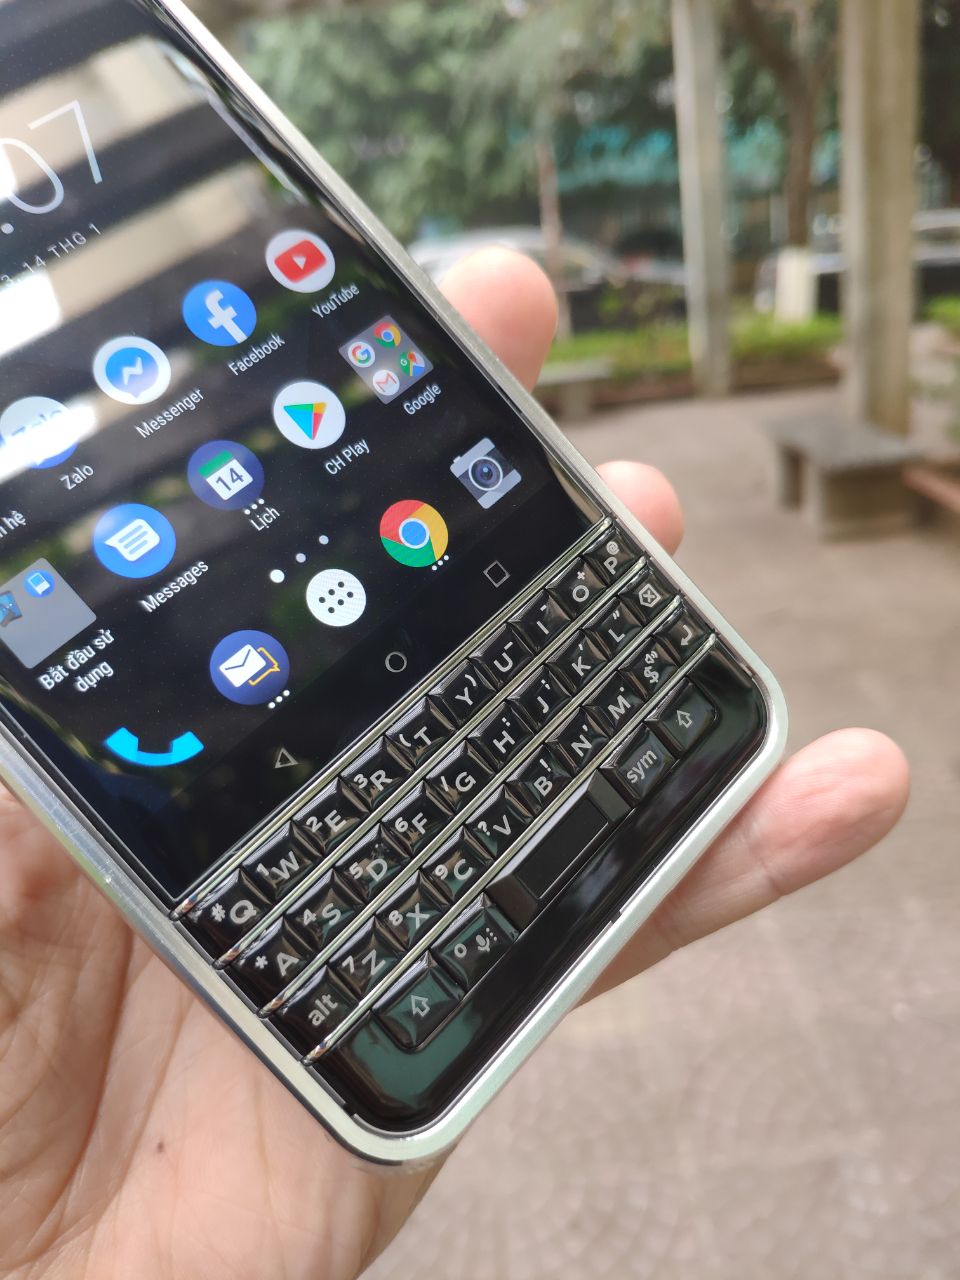 tin-tuc/rip-blackberry-toan-bo-cac-smartphone-chay-android-cua-hang-se-bi-ngung-ban-vao-thang-8-2020.html